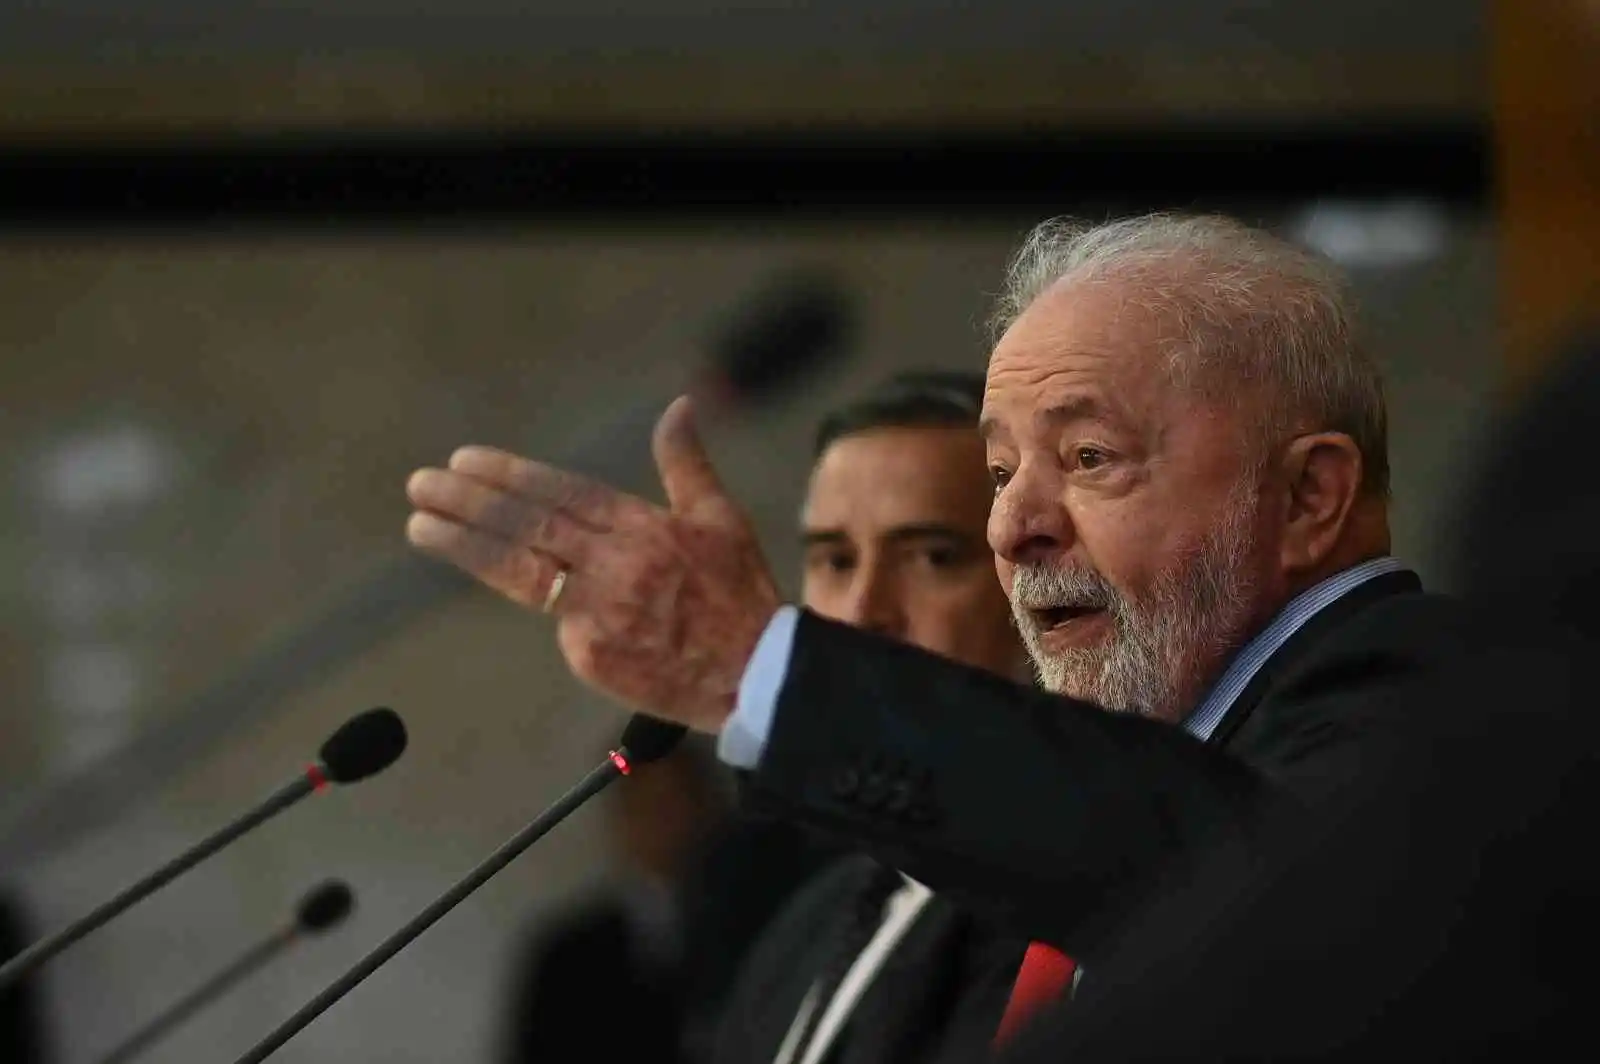 Brezilya Devlet Başkanı Lula, Planalto Sarayı'ndaki görevlileri isyancılara yardımla suçladı
